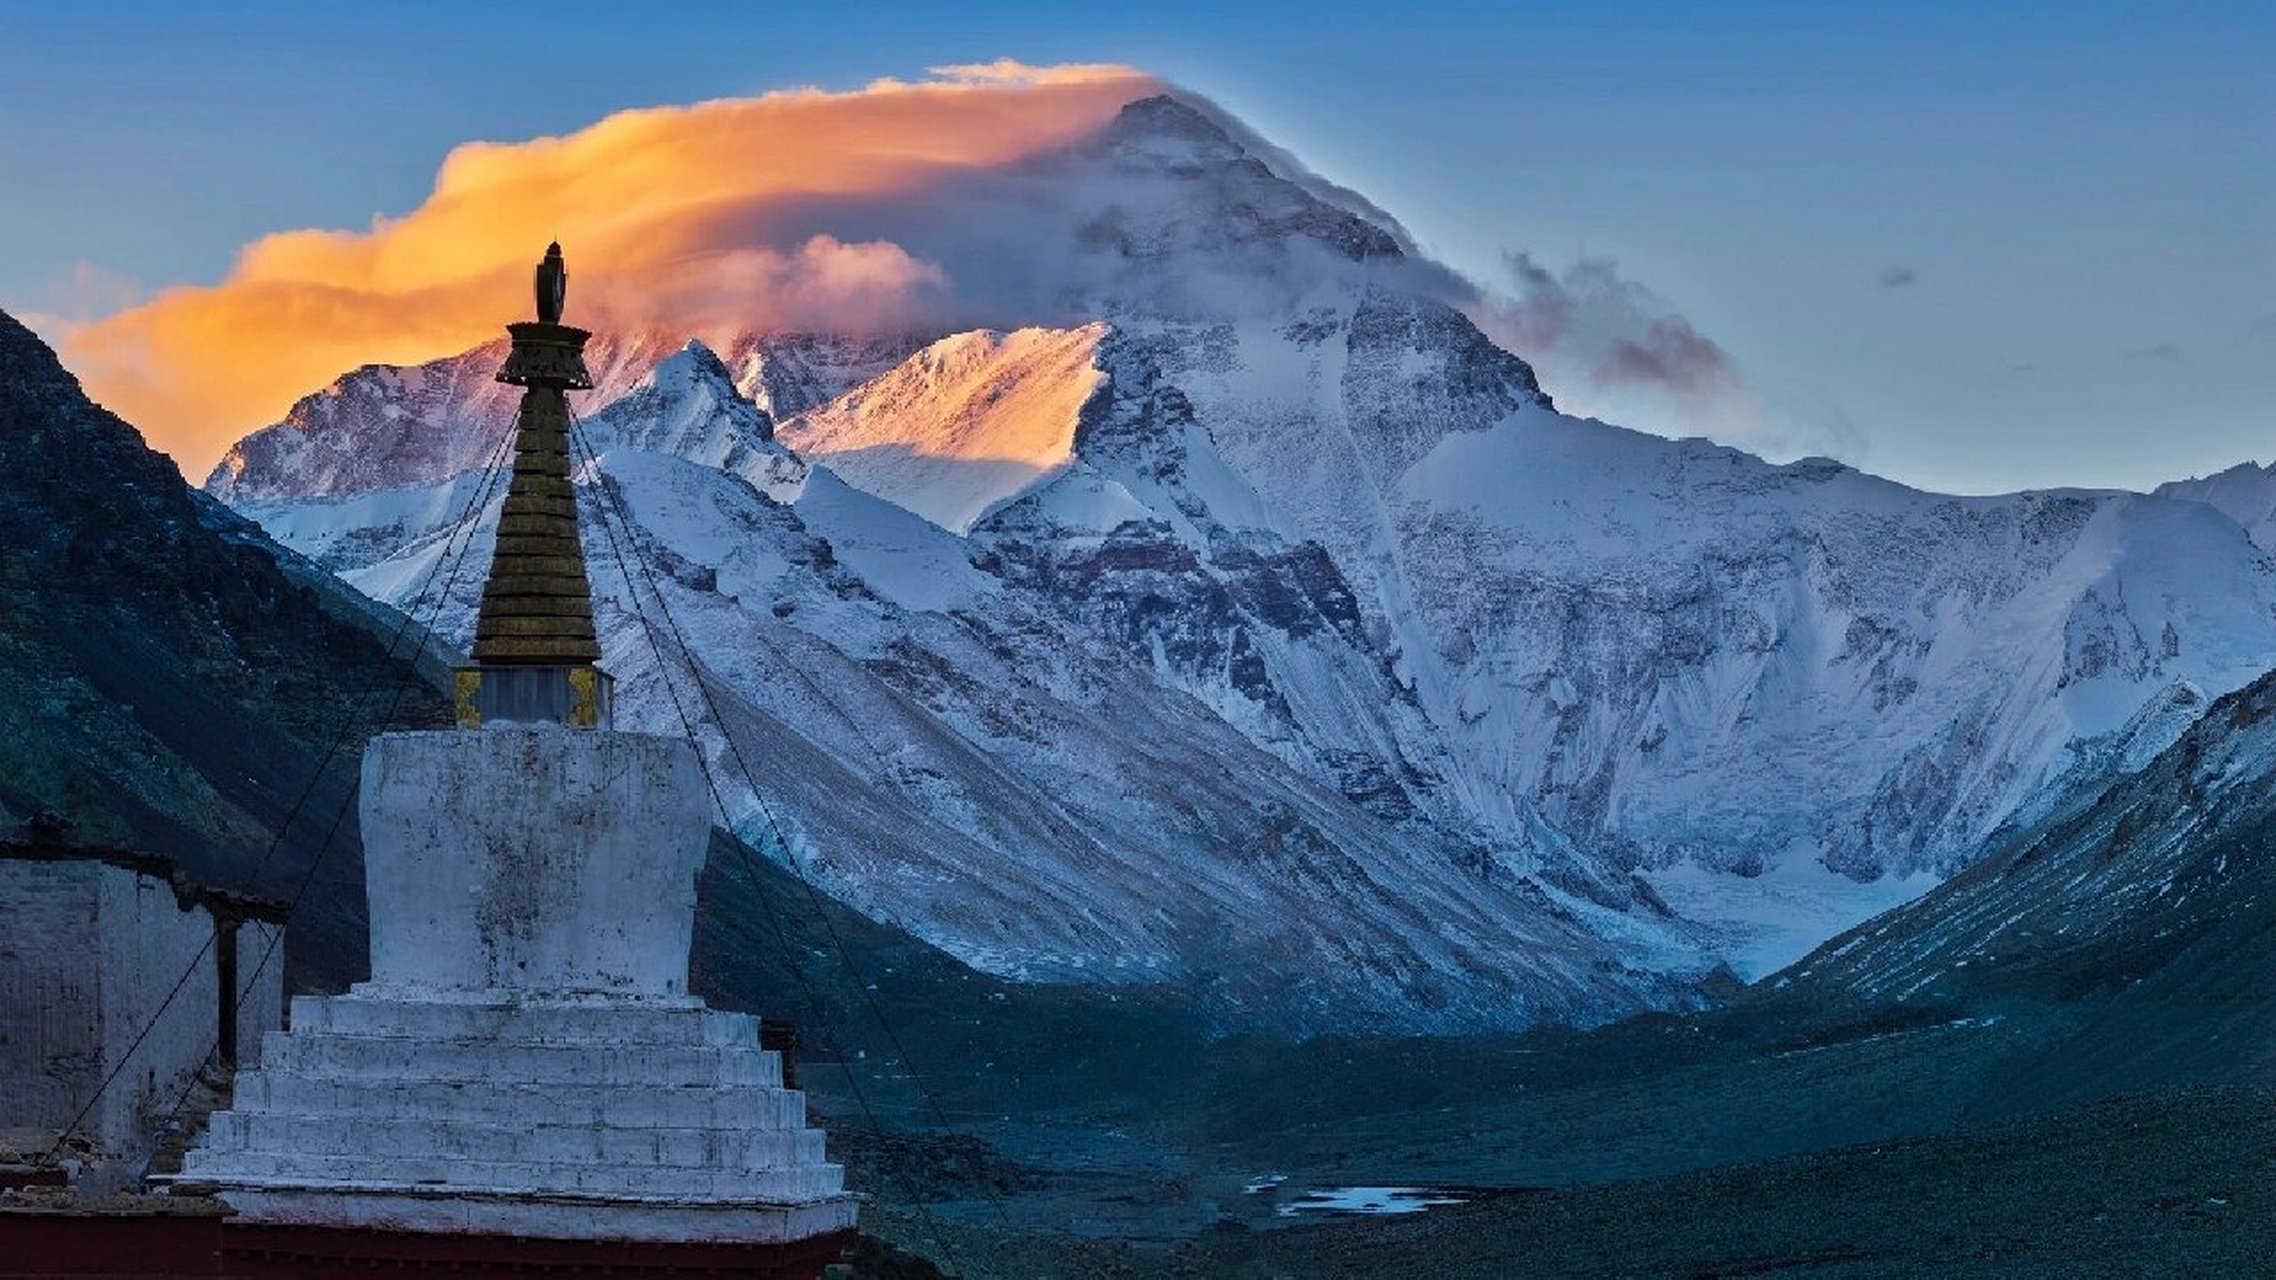 中尼边界(西藏自治区) 名山简况:珠穆朗玛峰,简称珠峰,位于中国和